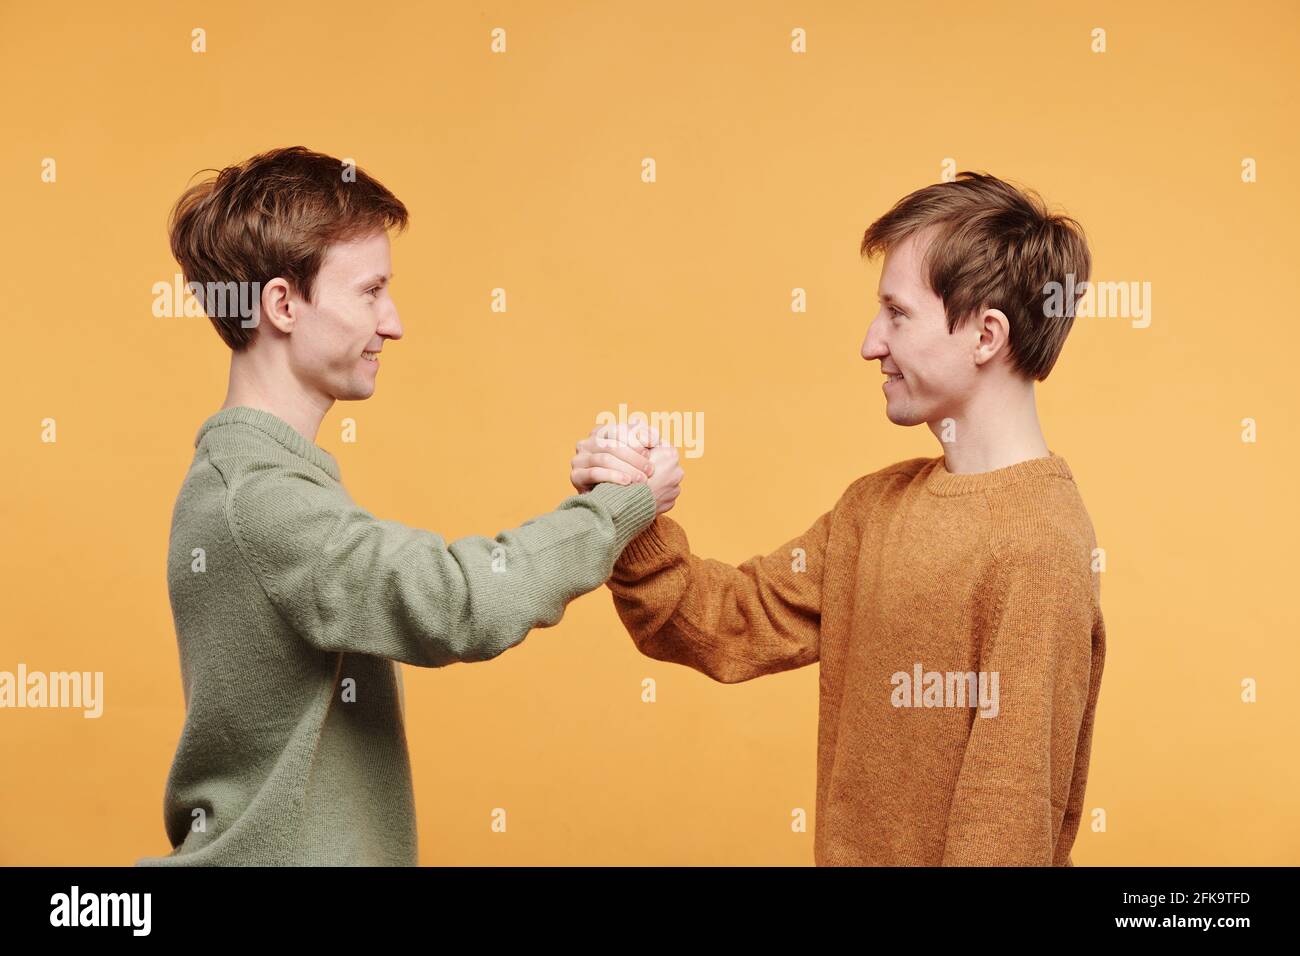 Seitenansicht von lächelnden, freundlichen Zwillingen in Pullovern, die dagegen stehen Orangefarbener Hintergrund und ein fester Händedruck Stockfoto